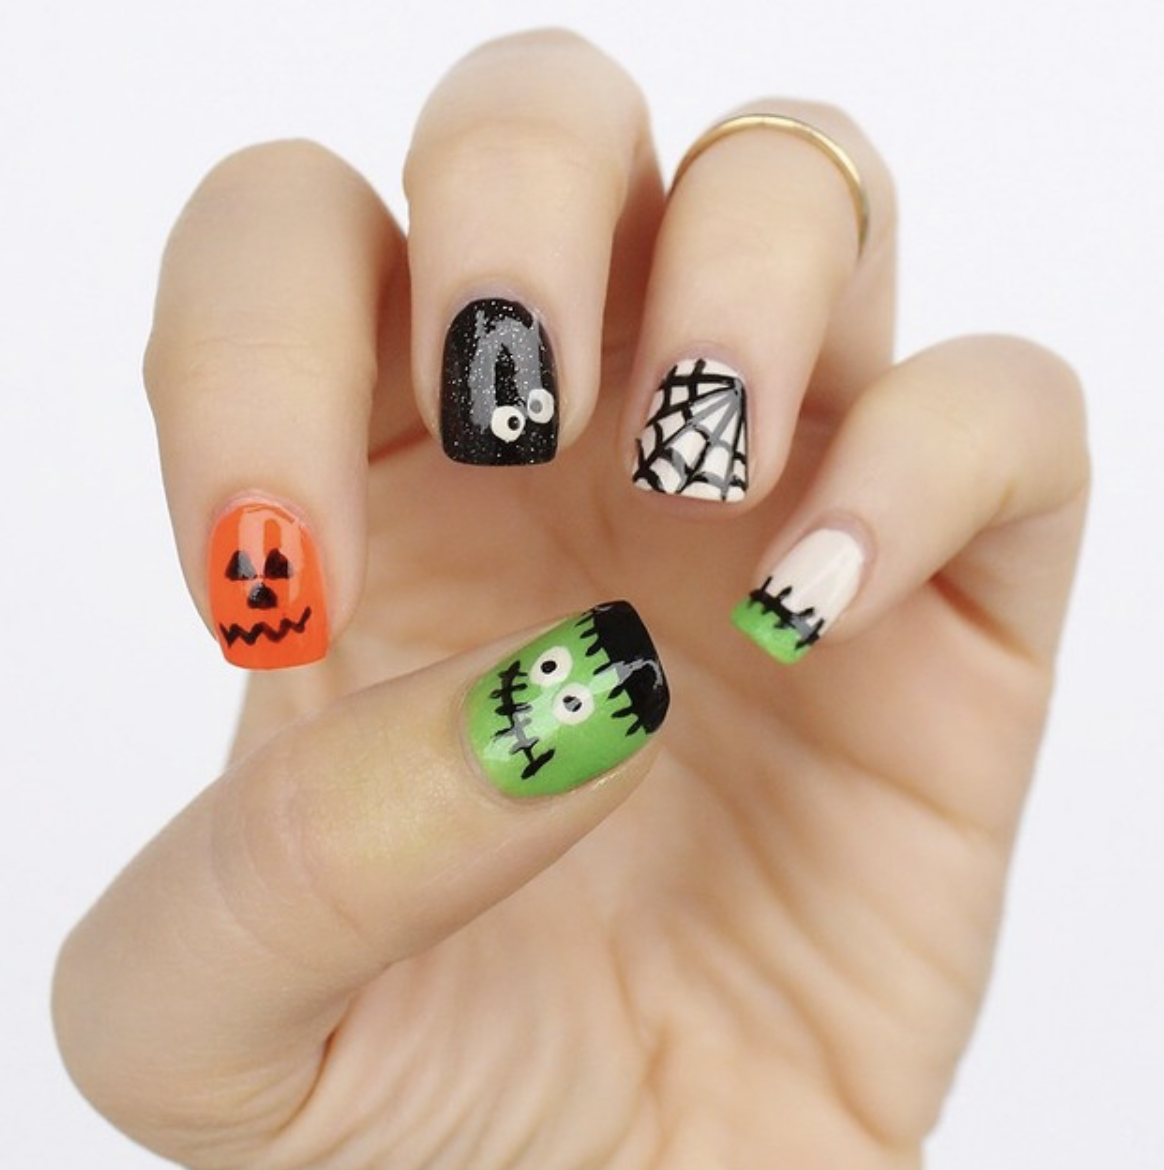 How To: Easy Halloween Nail Art - BuyMeBeauty.com